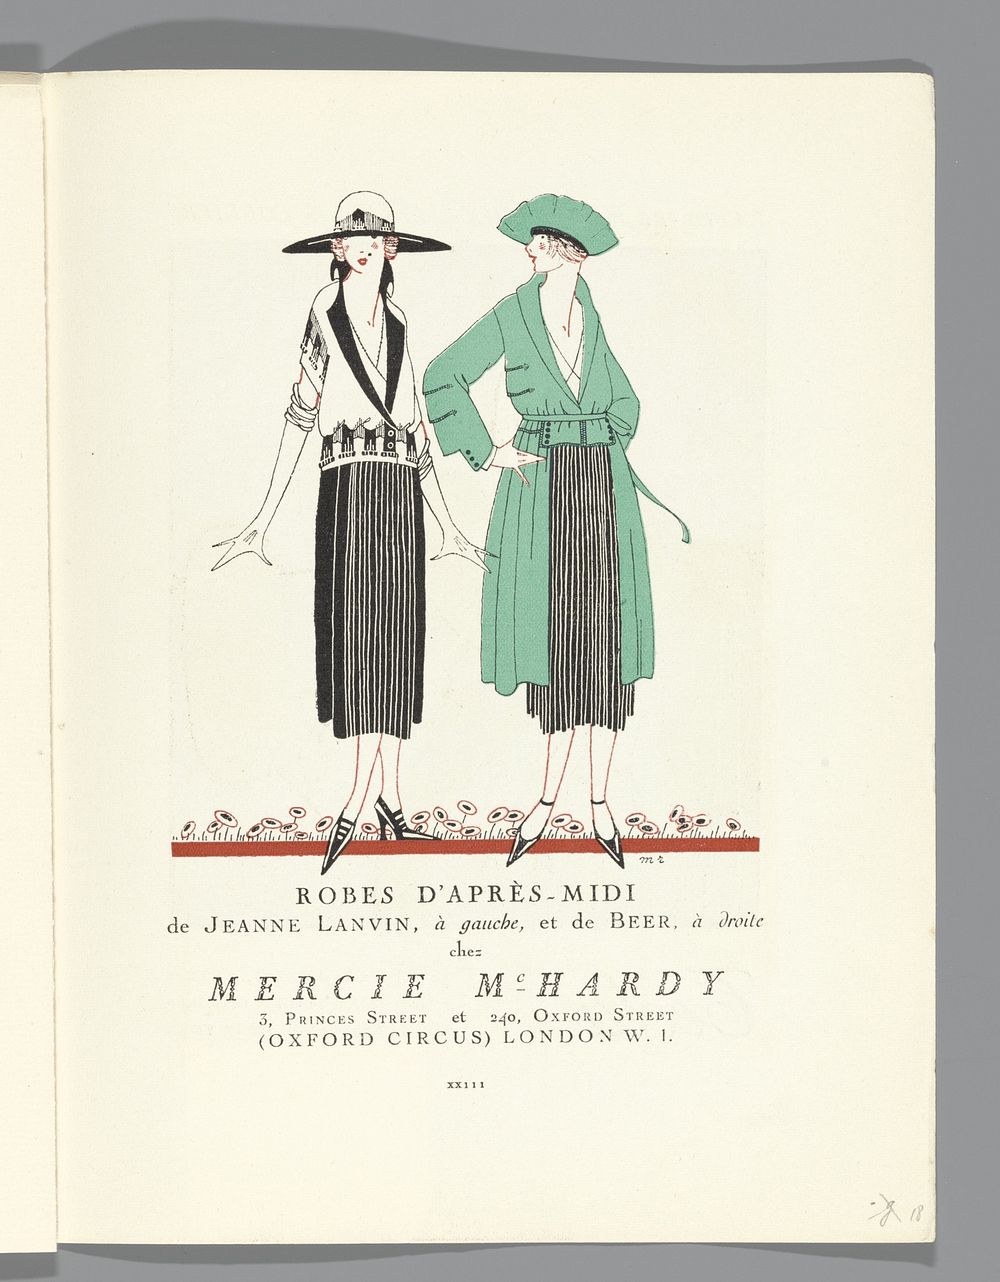 Gazette du Bon Ton, 1920 - No. 3, p. XXIII: Robes d'après-midi de Lanvin et Beer (1920) by Lucien Vogel, The Field Press…